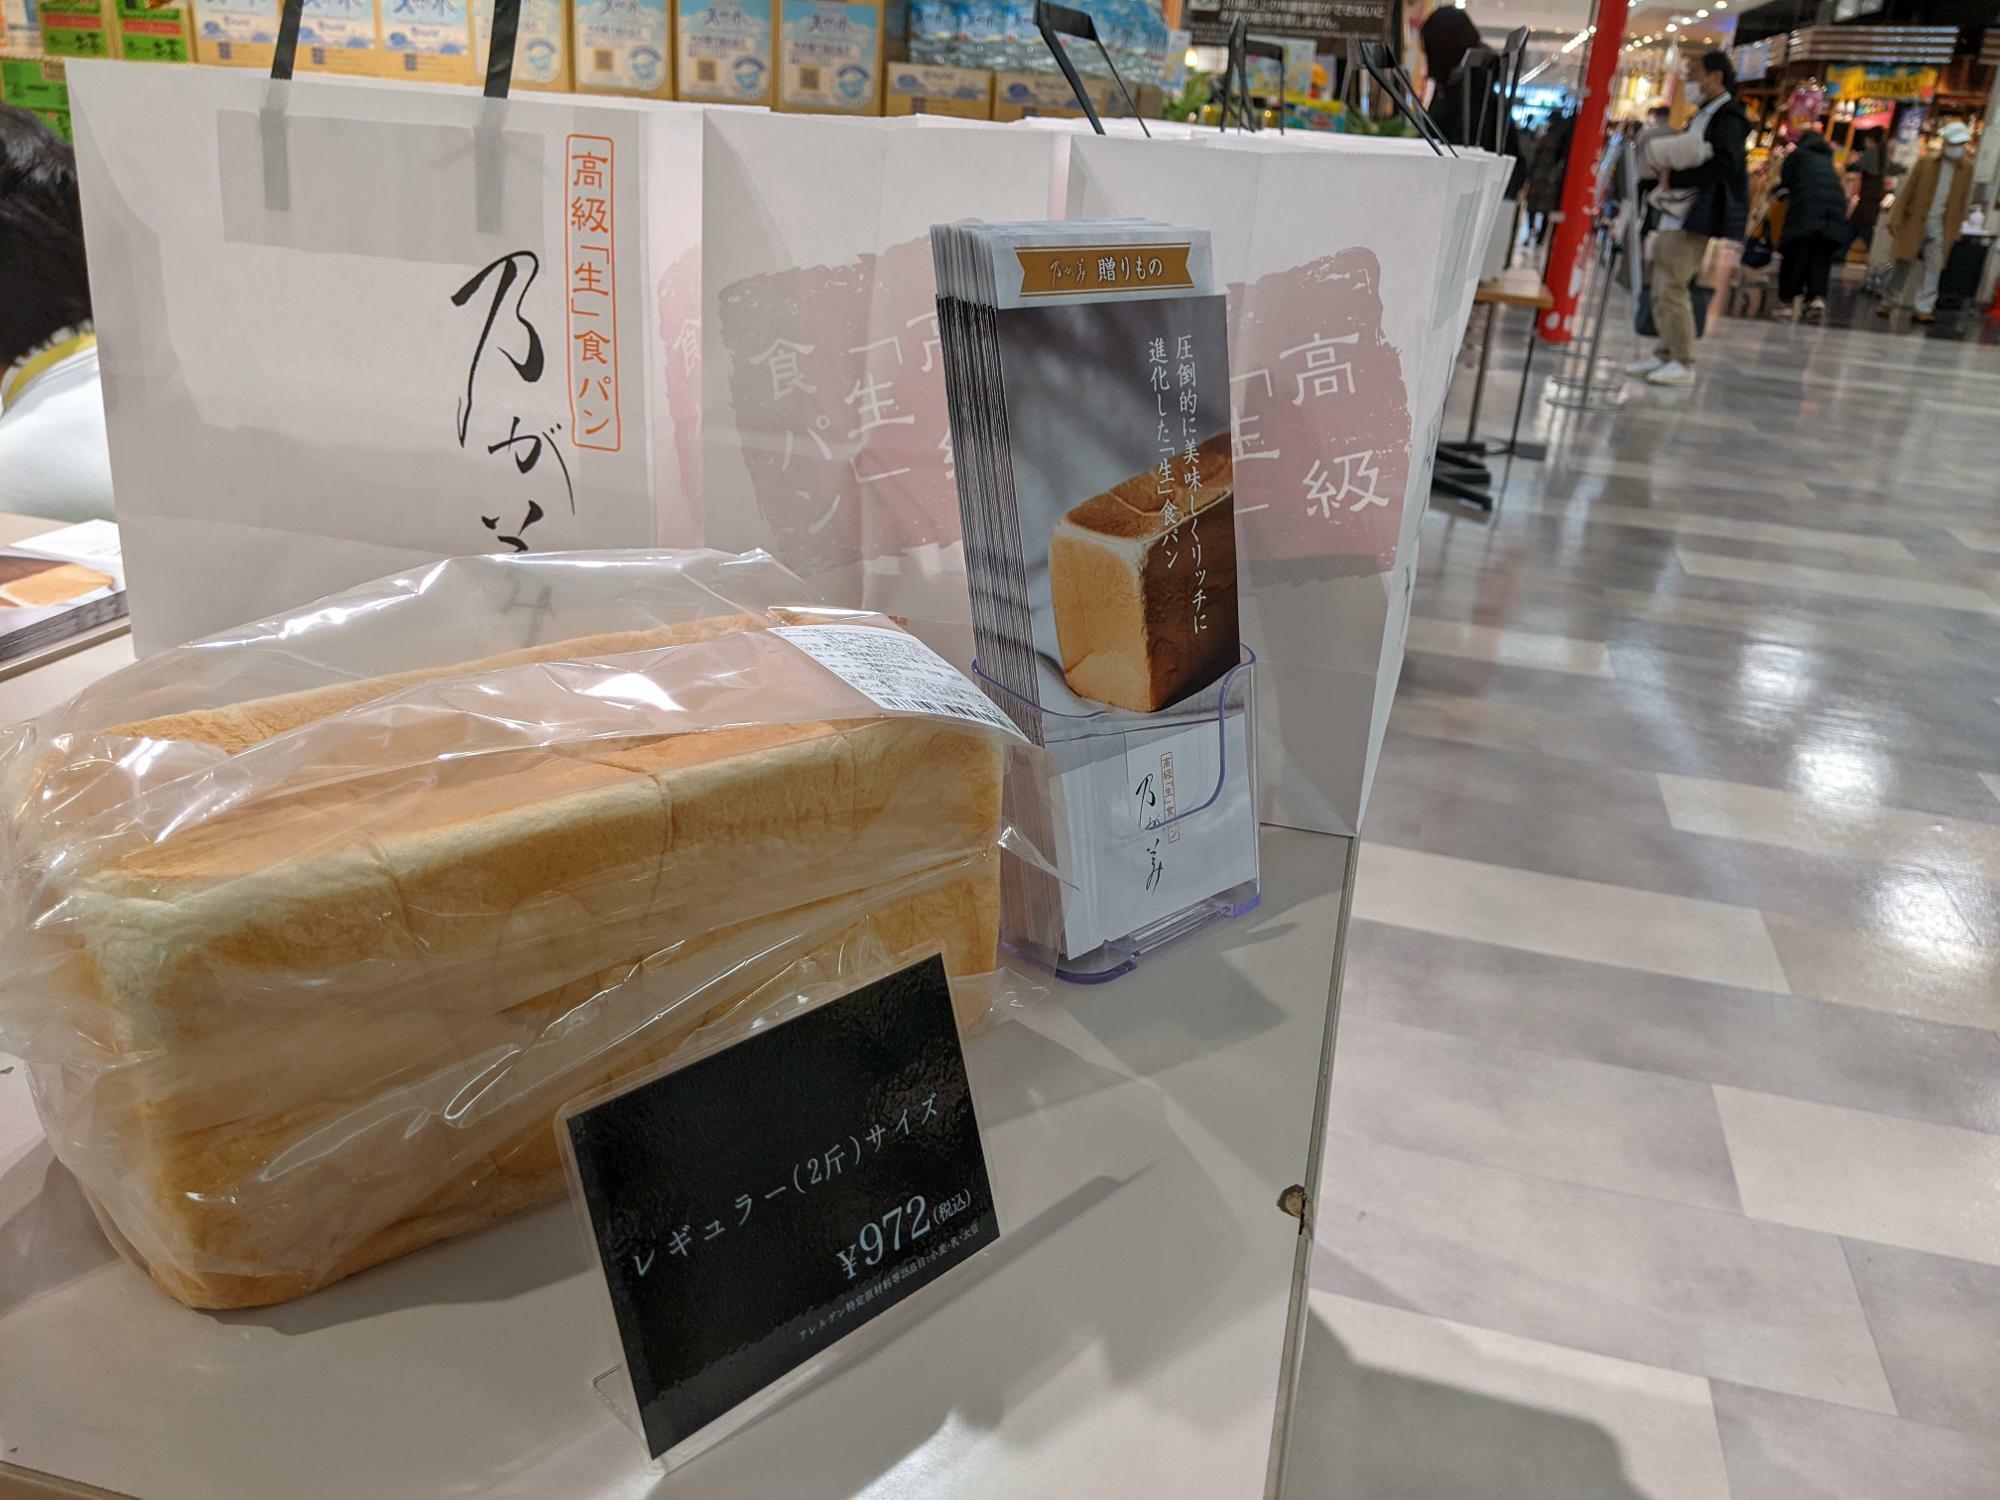 乃が美の催事会場で販売されているレギュラー（２斤サイズ）の食パン